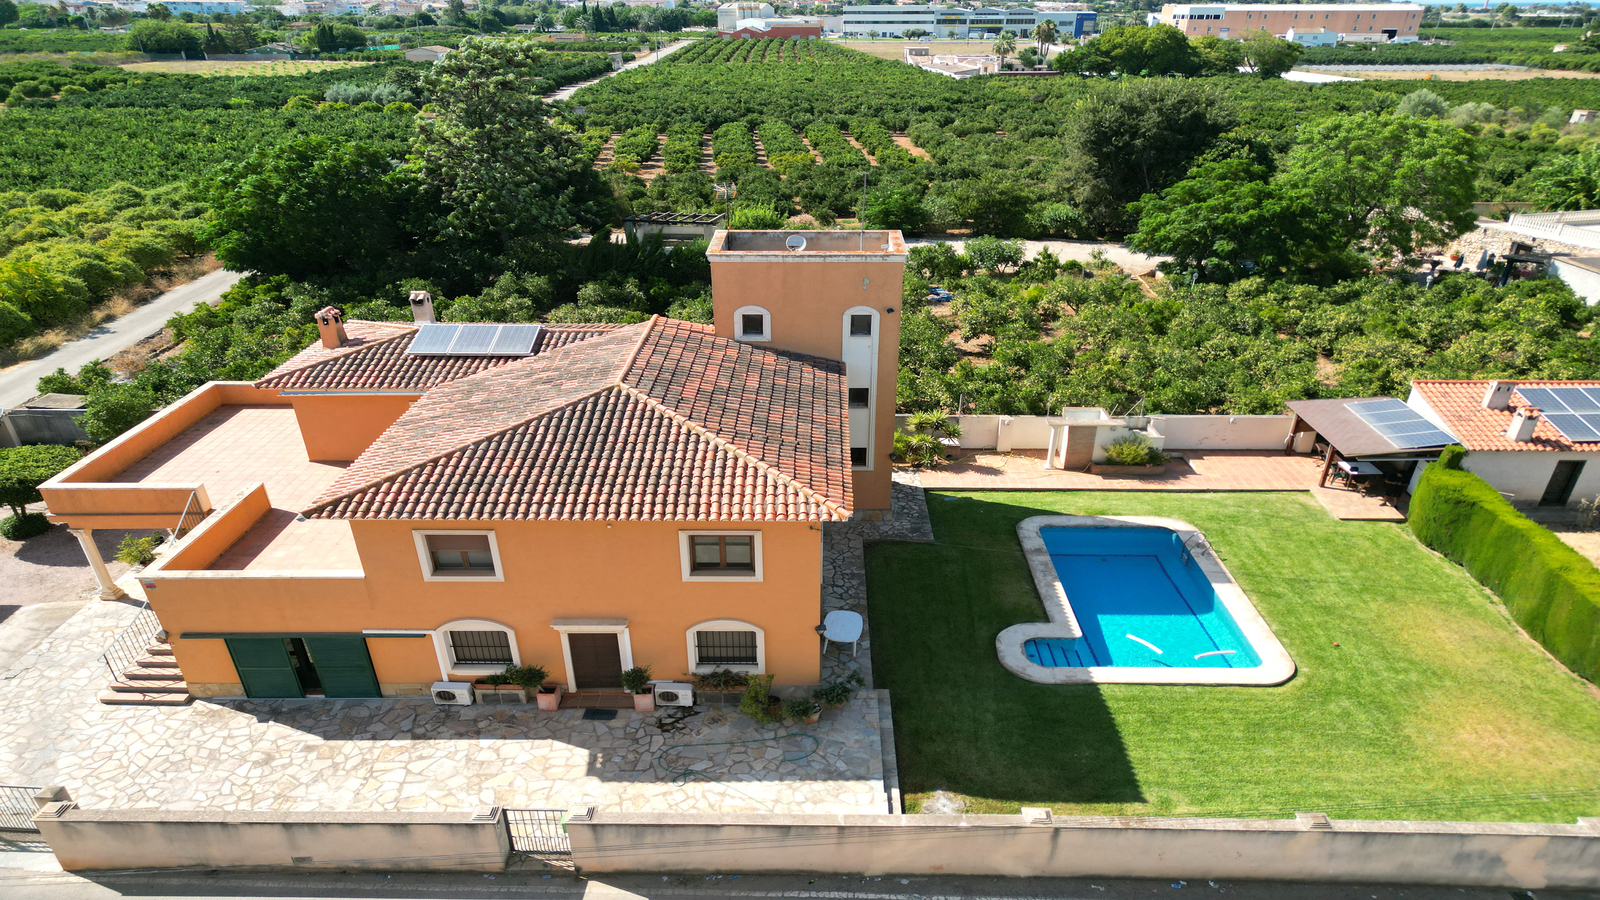 Villa de 4 dormitorios con una gran terraza XXL, gran piscina, casa de barbacoa con una cocina de verano, jardín con árboles frutales.